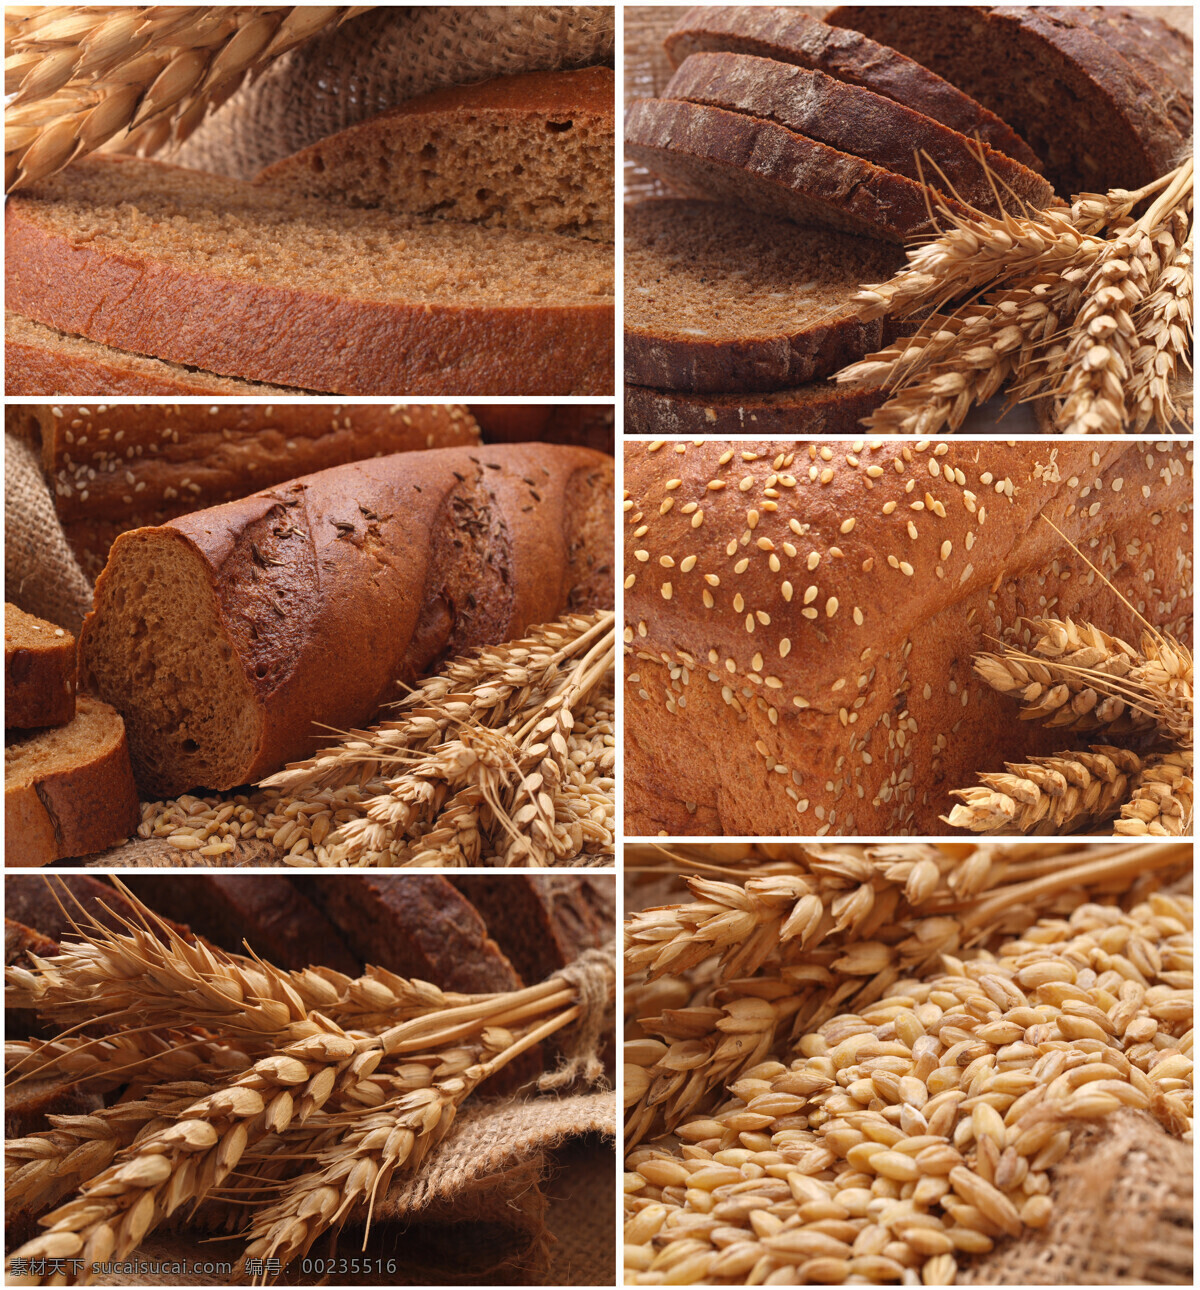 小麦食物拼图 小麦 食物 面食 面包 面包片 馒头 种子 稻谷 中华美食 餐饮美食 黑色